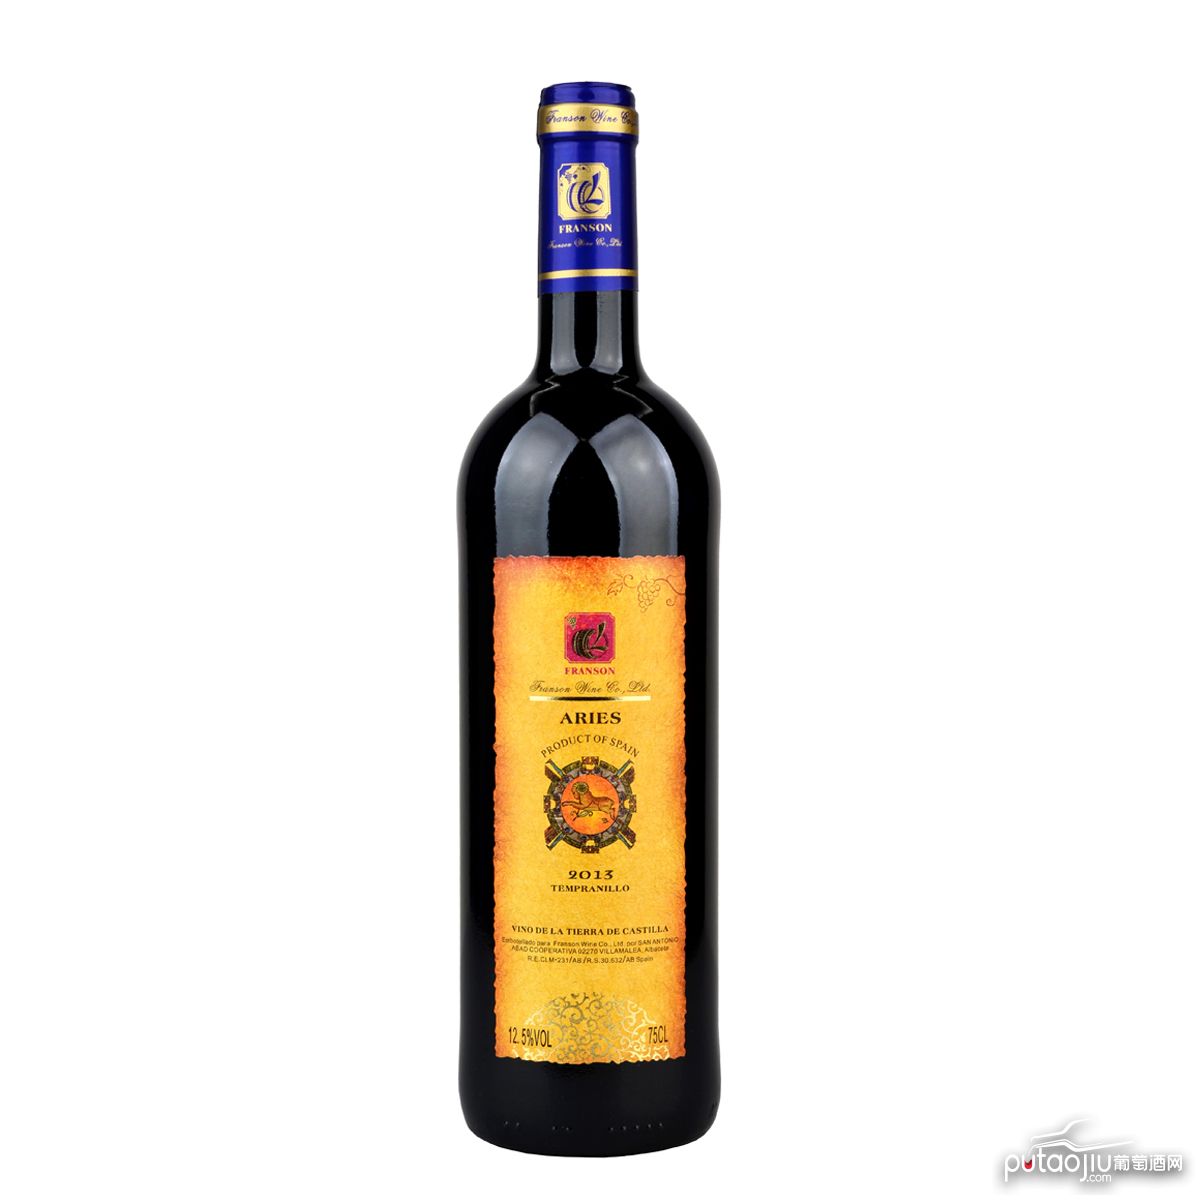 西班牙卡斯蒂亚SAN ANTONIO ABAD星座系列添帕尼优白羊座103VDLT干红葡萄酒